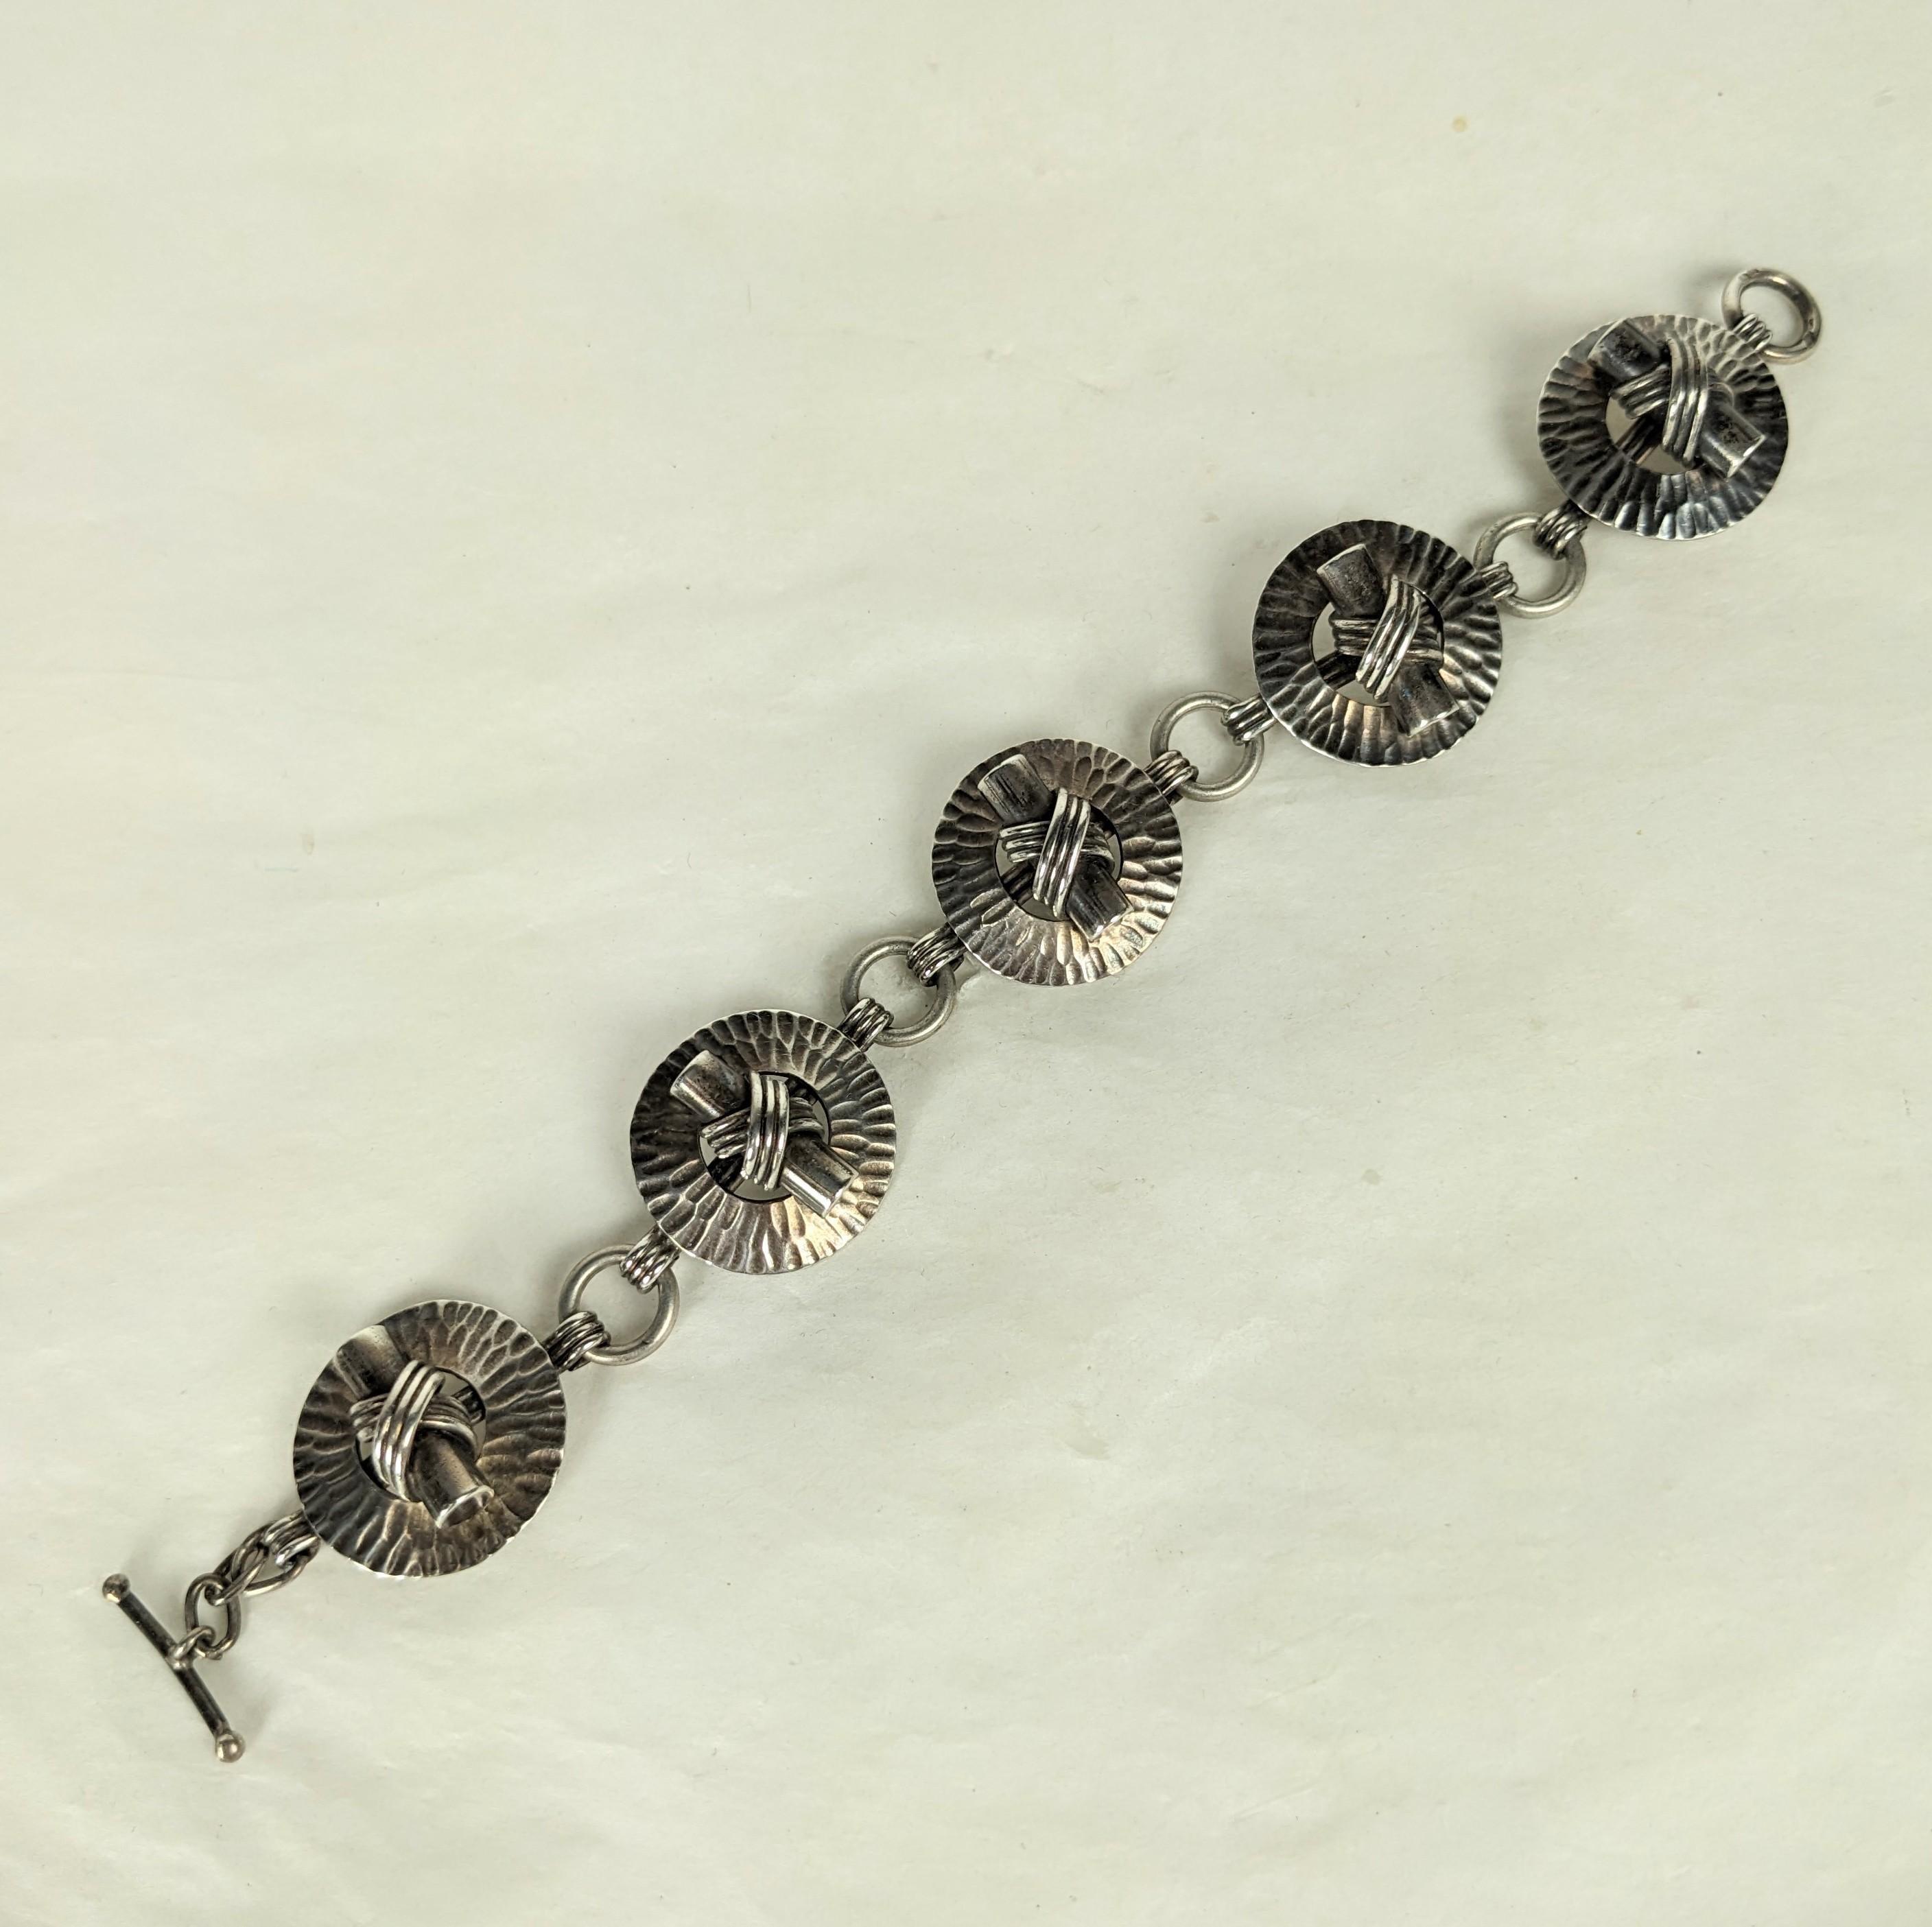 Französisches Art-Déco-Silberarmband von Fernand Grange aus den 1930er Jahren. Unglaubliches handgefertigtes Design aus gehämmerten Ringen mit dimensionalem, gebundenem Knebelmotiv. Ein ganz besonderes Design von einem Meister des Art Deco.